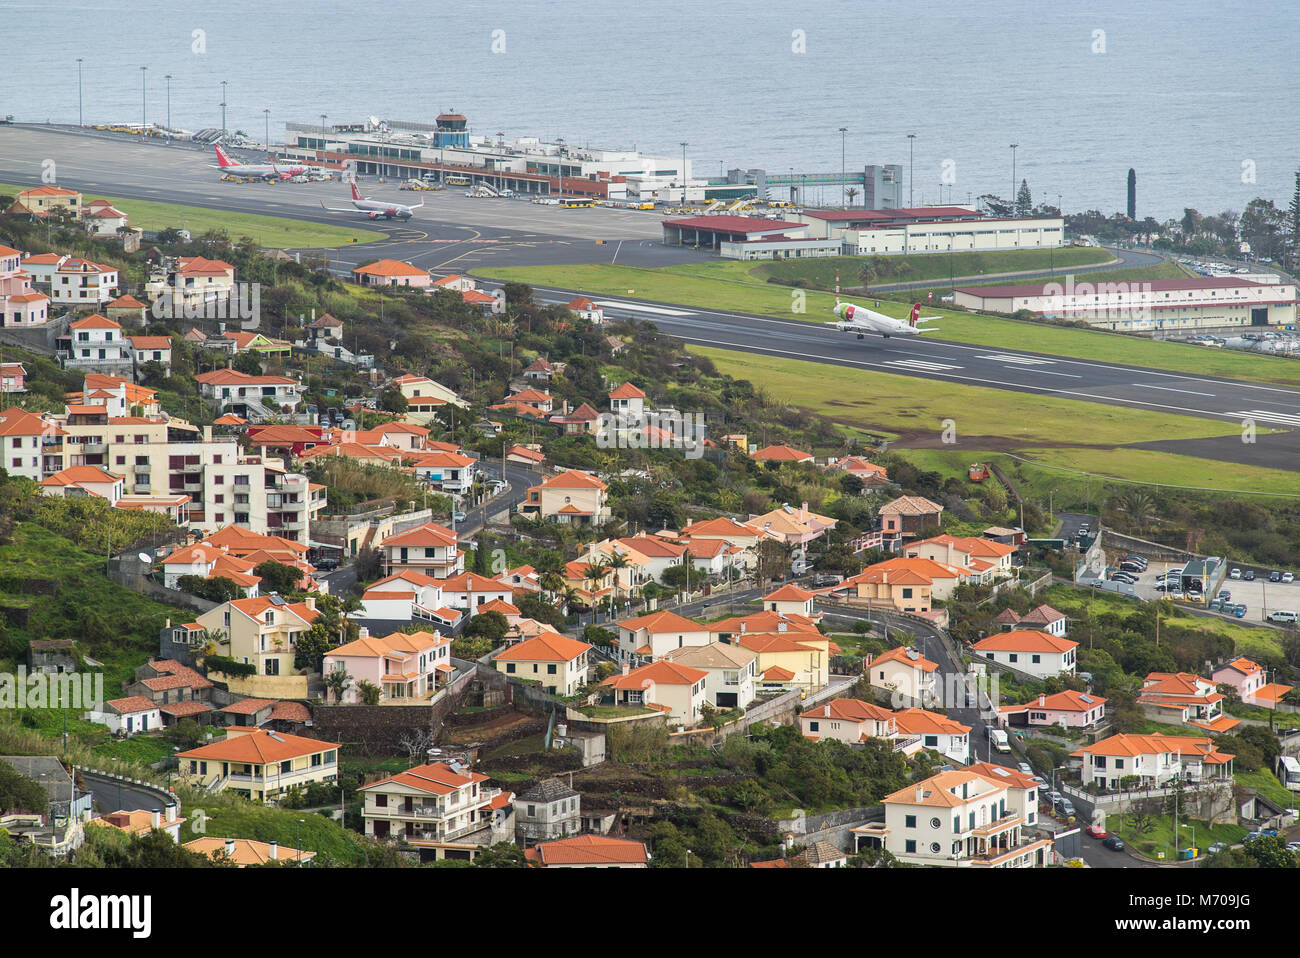 Un avion TAP Portugal fait l'approche finale dans le défi qui lui valut l'aéroport de Funchal à l'approche de l'aéroport de Madère, Cristiano Ronaldo Banque D'Images